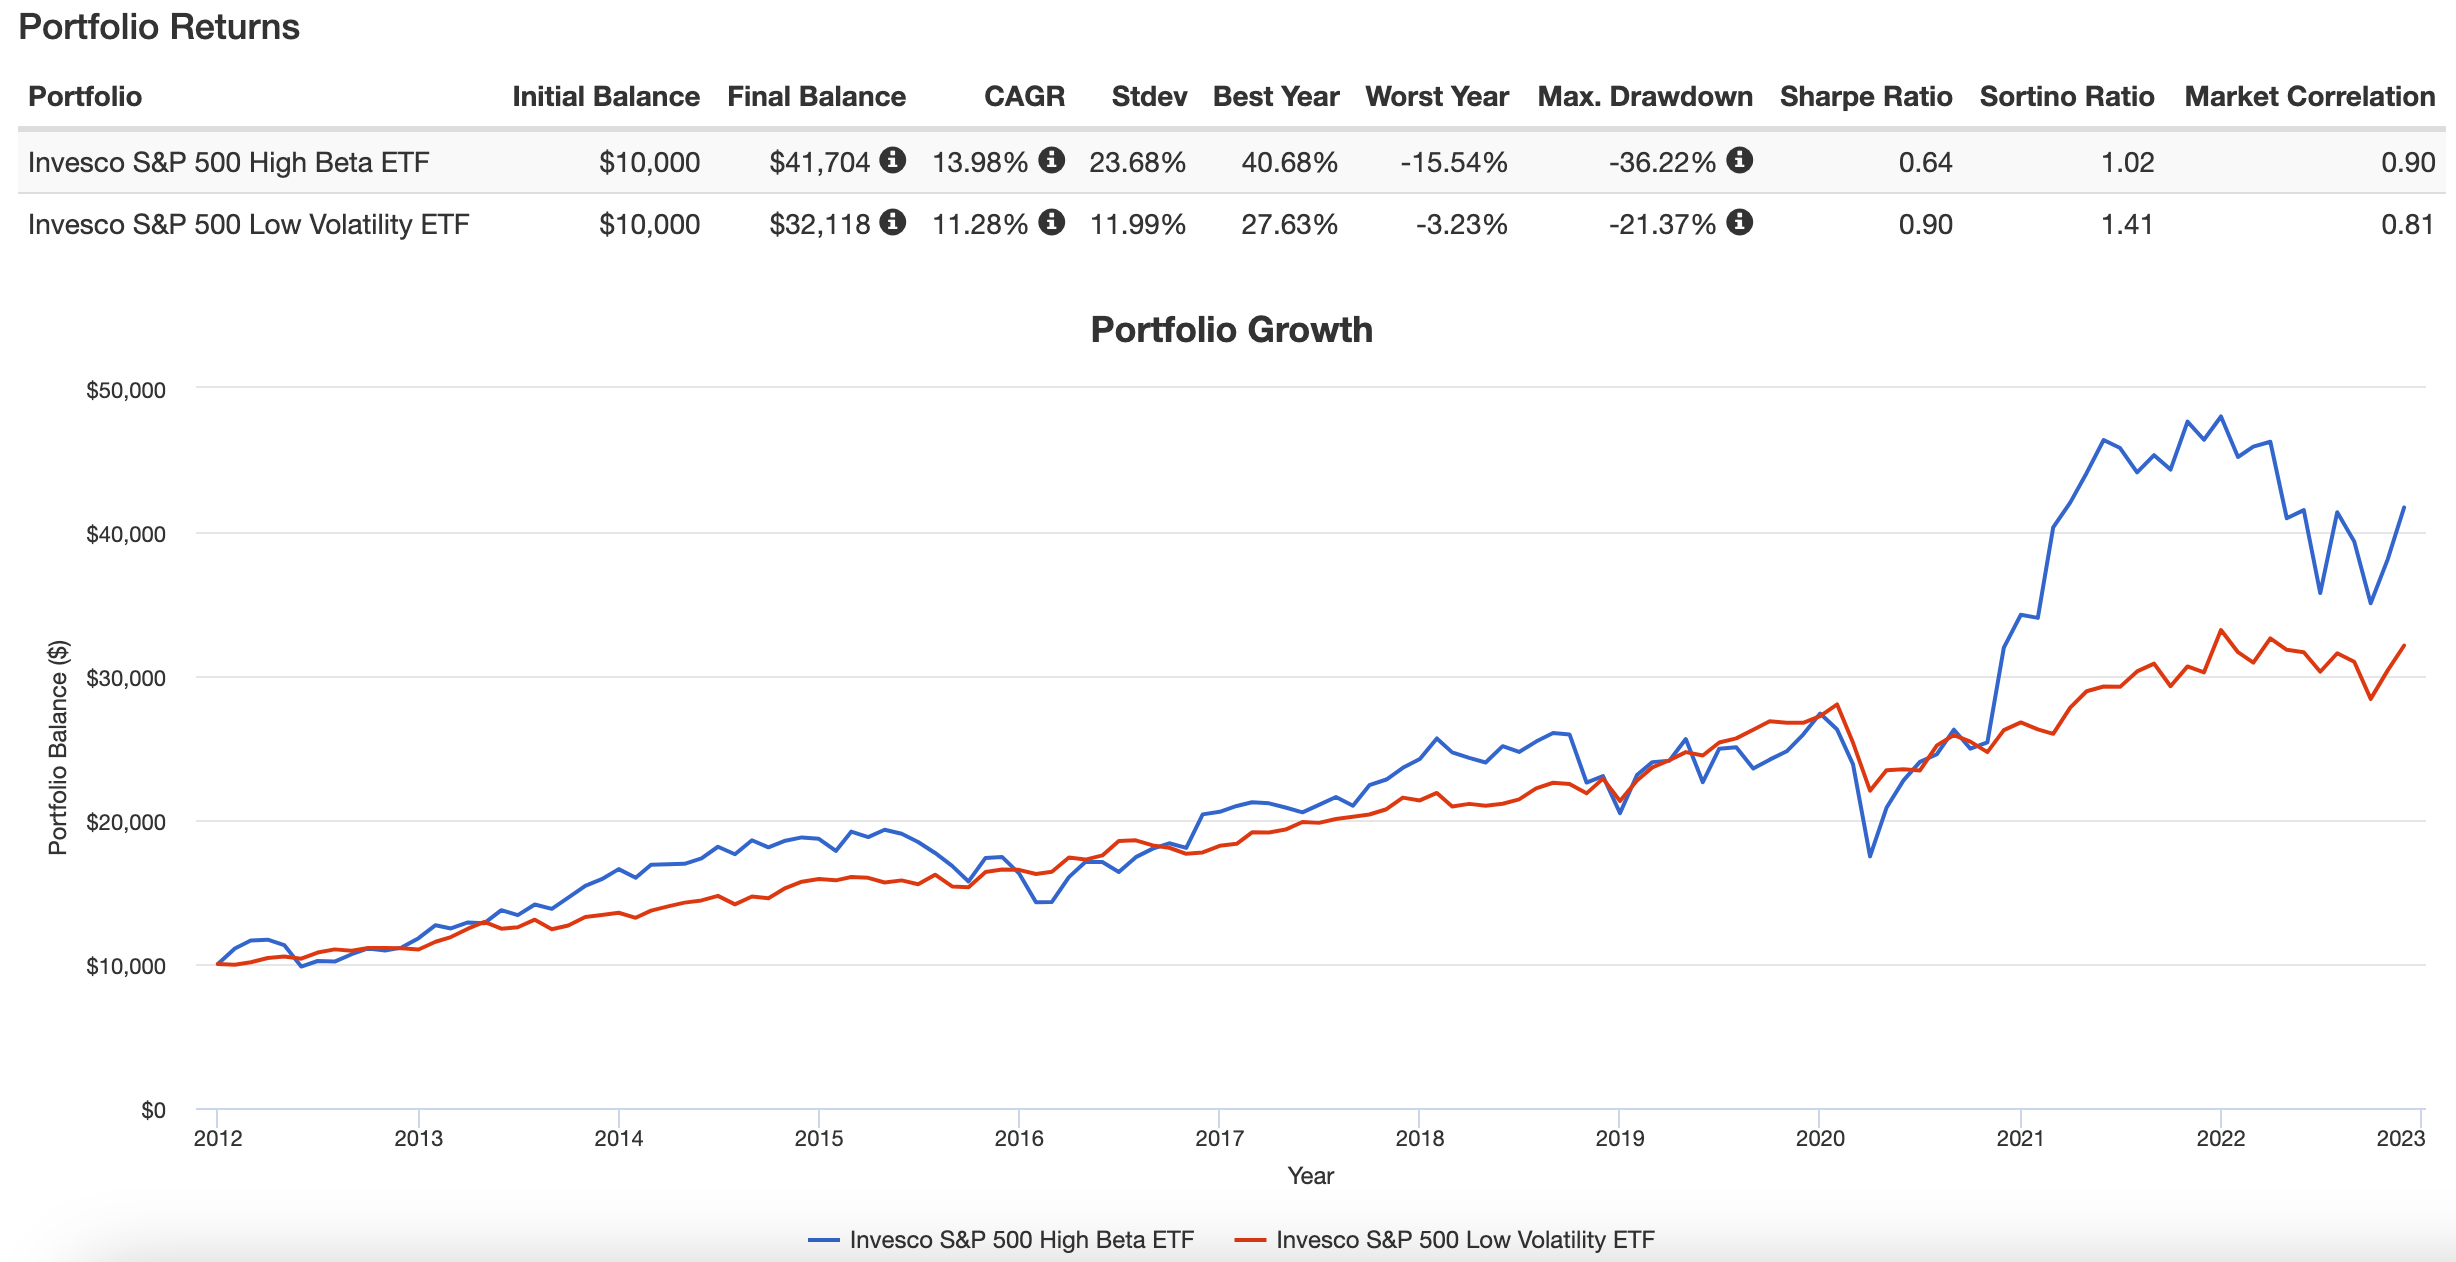 S&P 500 High Beta ETF vs S&P 500 Low Volatility ETF